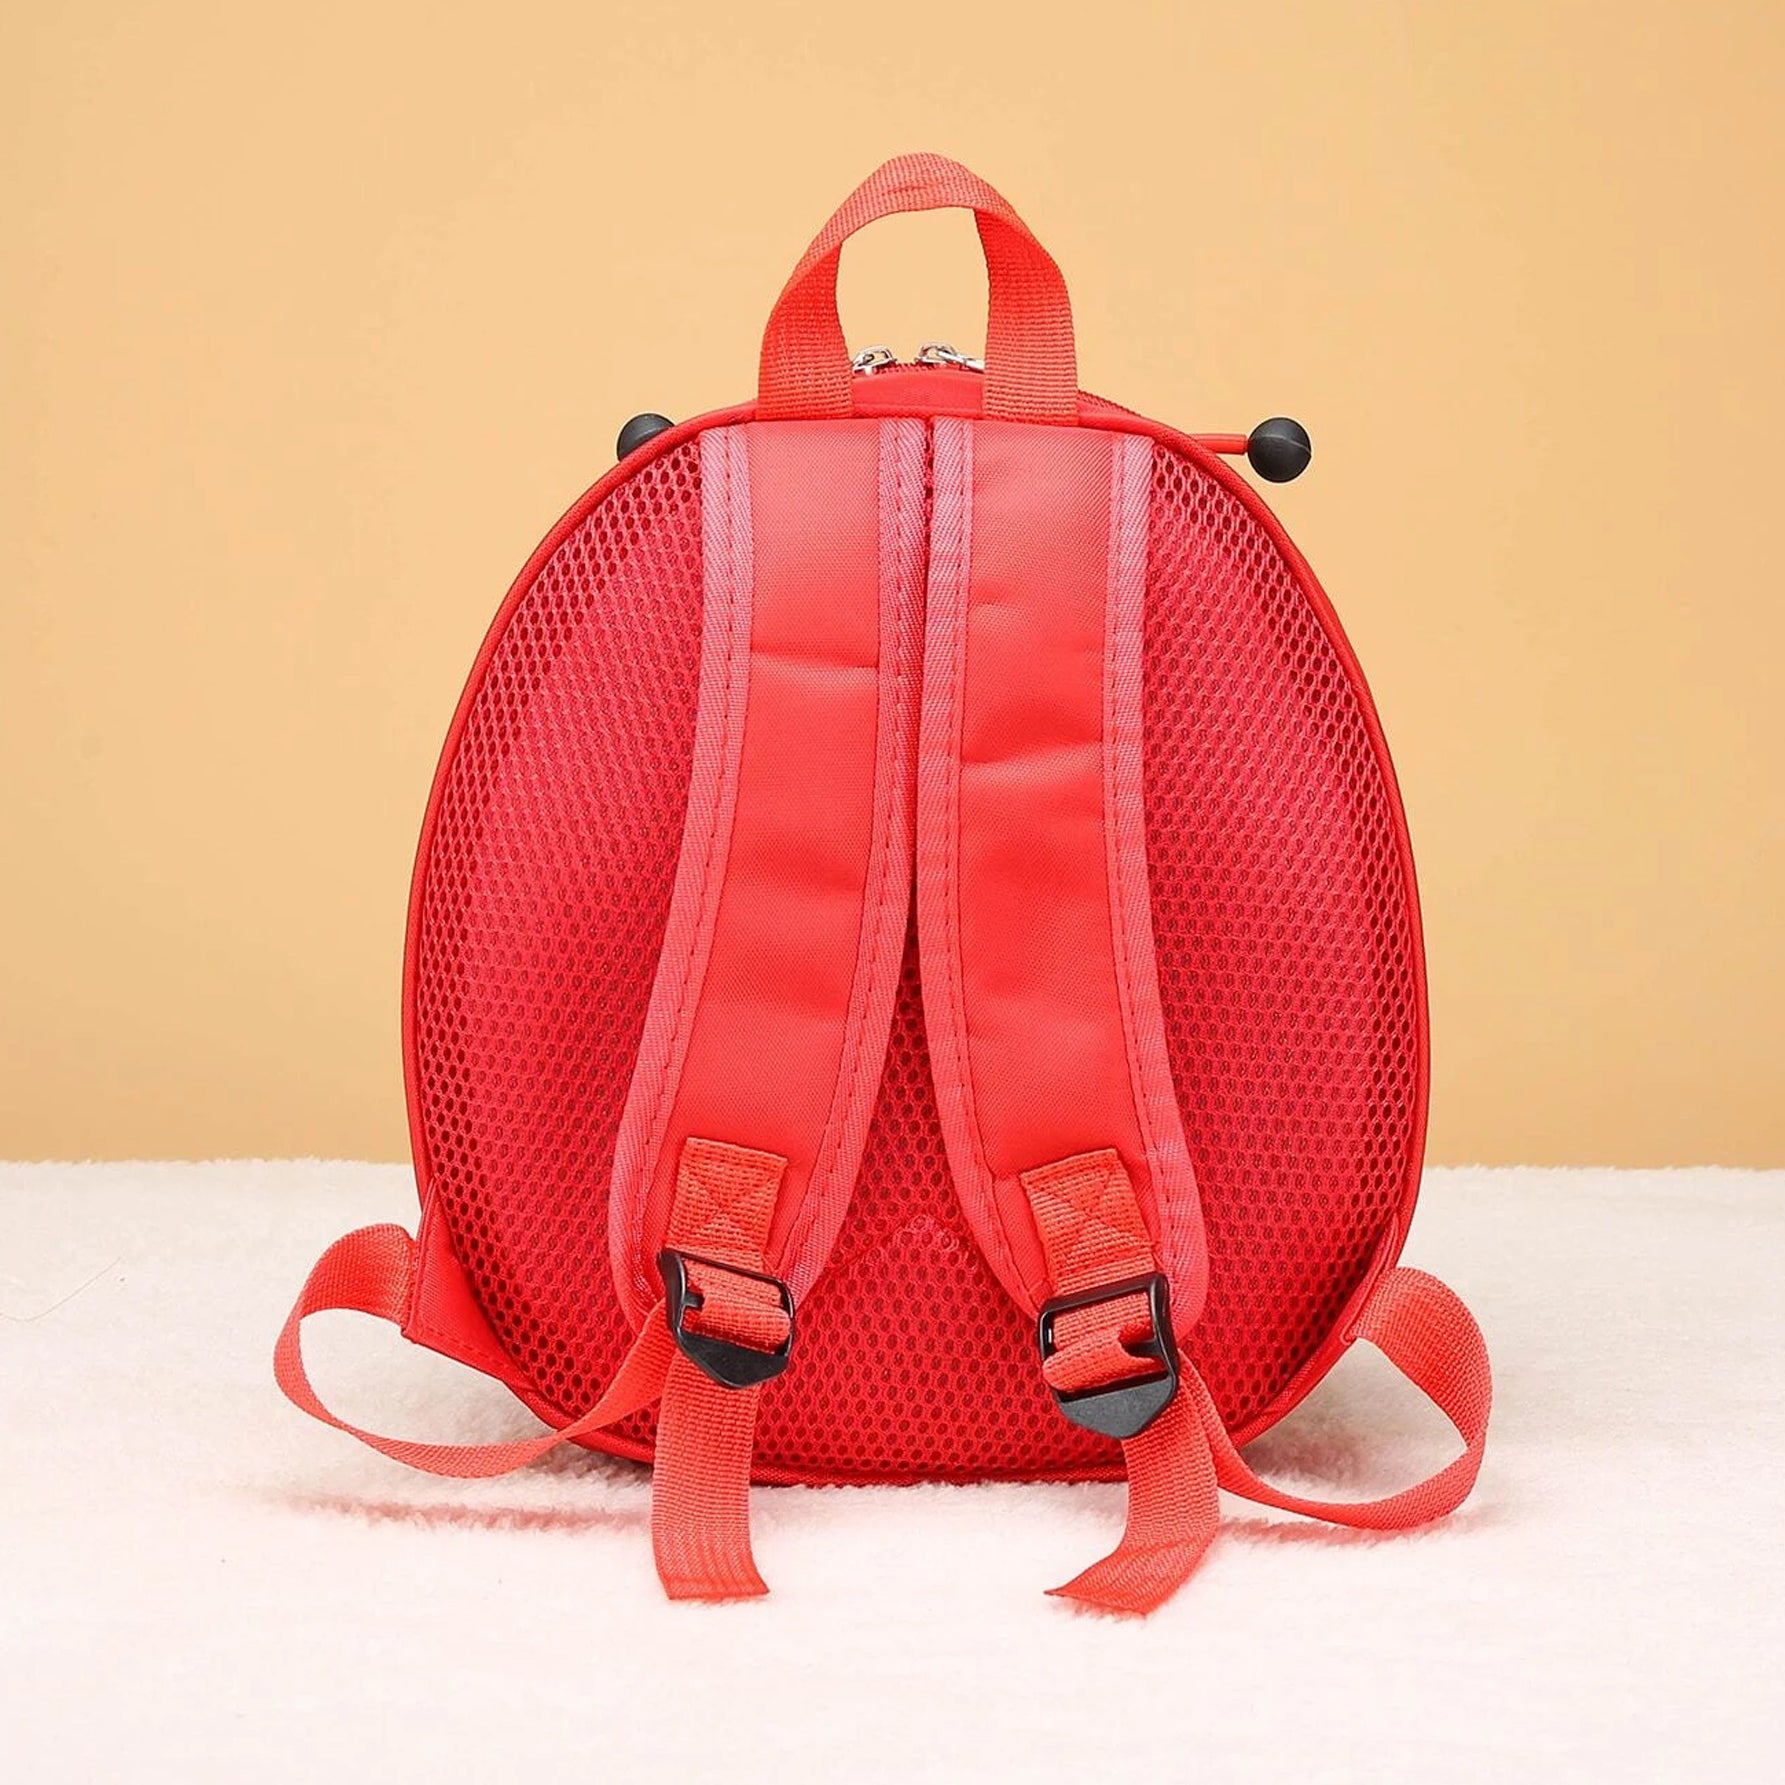 شنطة ظهر للاطفال من الجنسين، بتصميم دعسوقة للبنات والاولاد في رياض الاطفال حقائب ظهر للاستخدام اليومي - احمر